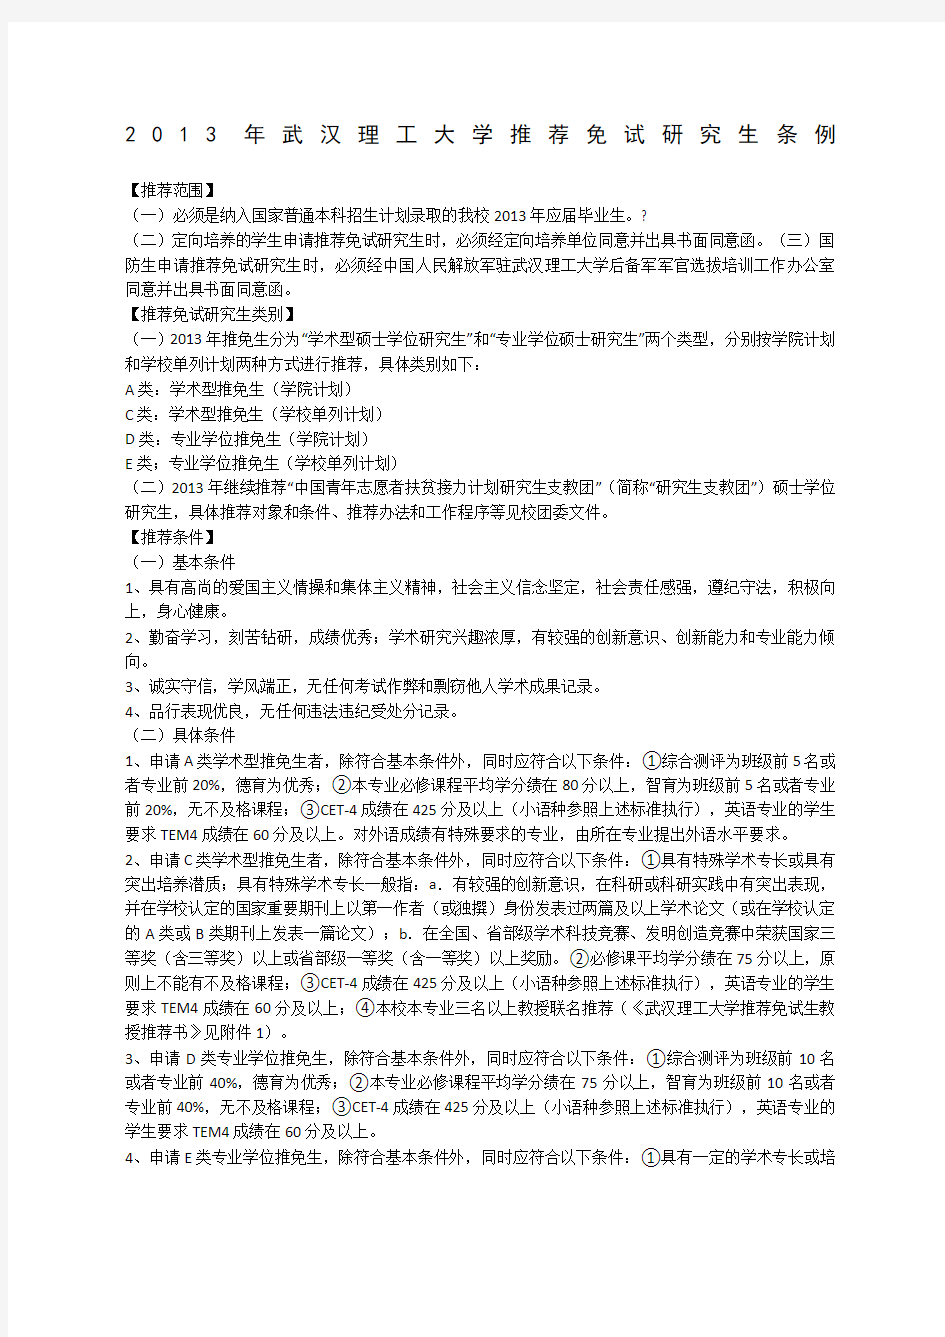 武汉理工大学推荐免试研究生条例及加分办法